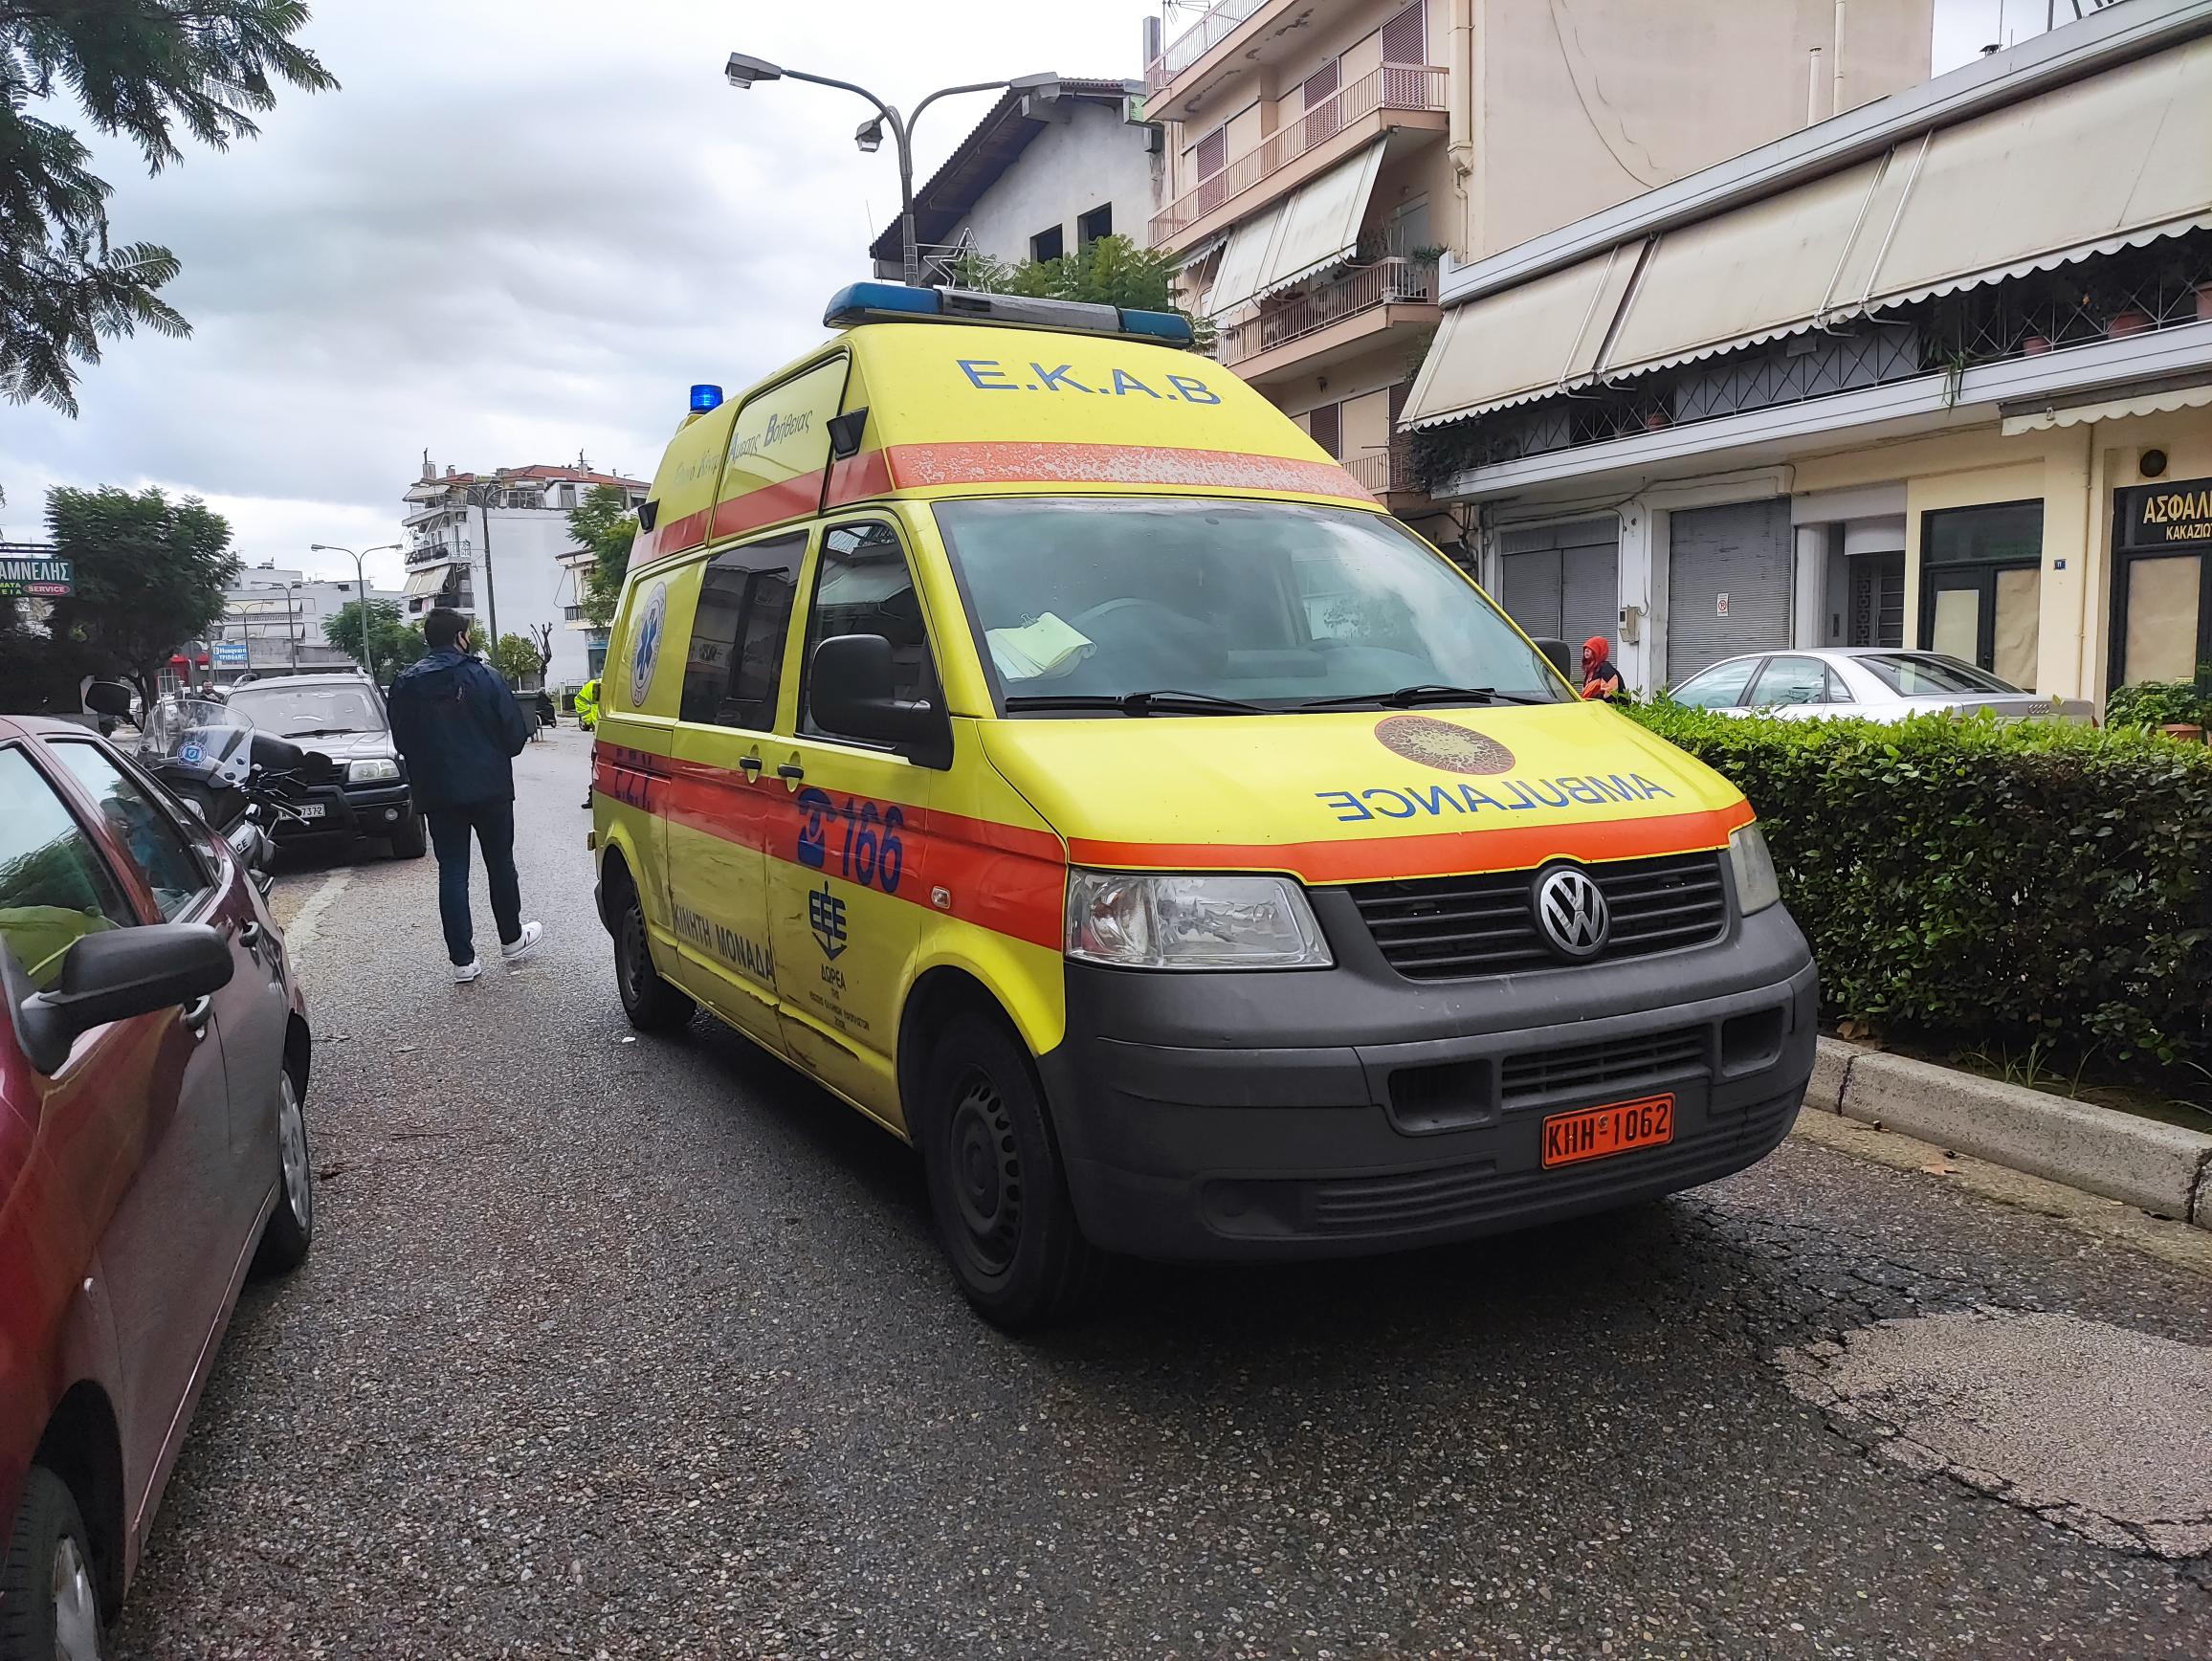 Αγρίνιο: Στο νοσοκομείο τραυματίας από παράσυρση (φωτο)